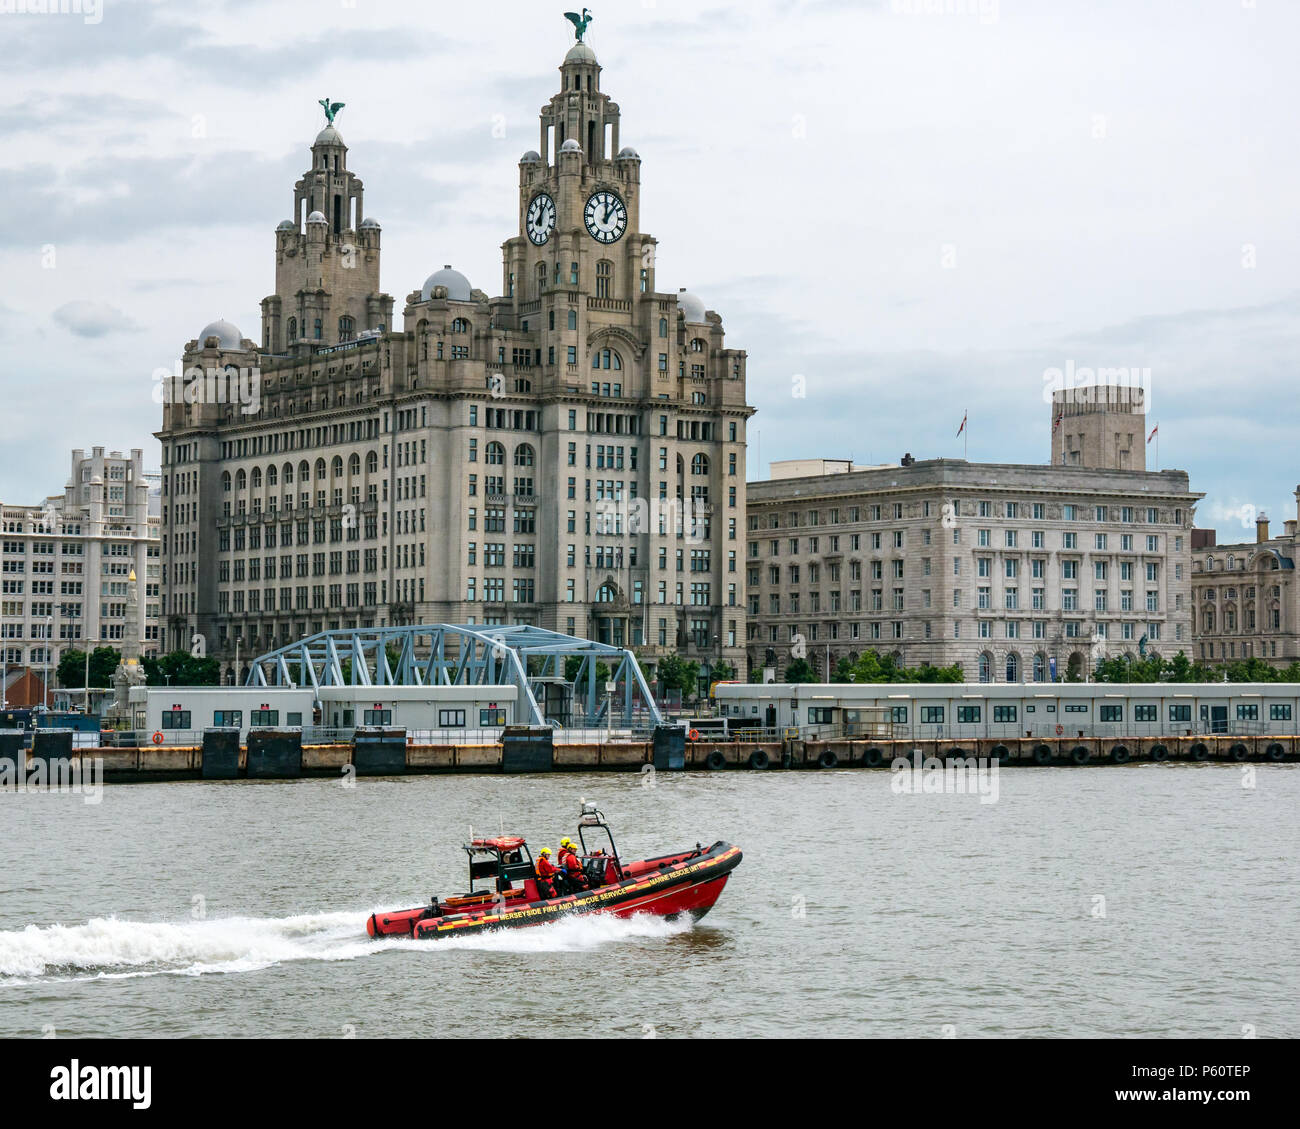 D'Incendie et de sauvetage de Merseyside gonflable rigide bateau de vitesse, Dabinda avec city landmark Royal Liver Building, Pier Head, Liverpool, Angleterre, Royaume-Uni Banque D'Images